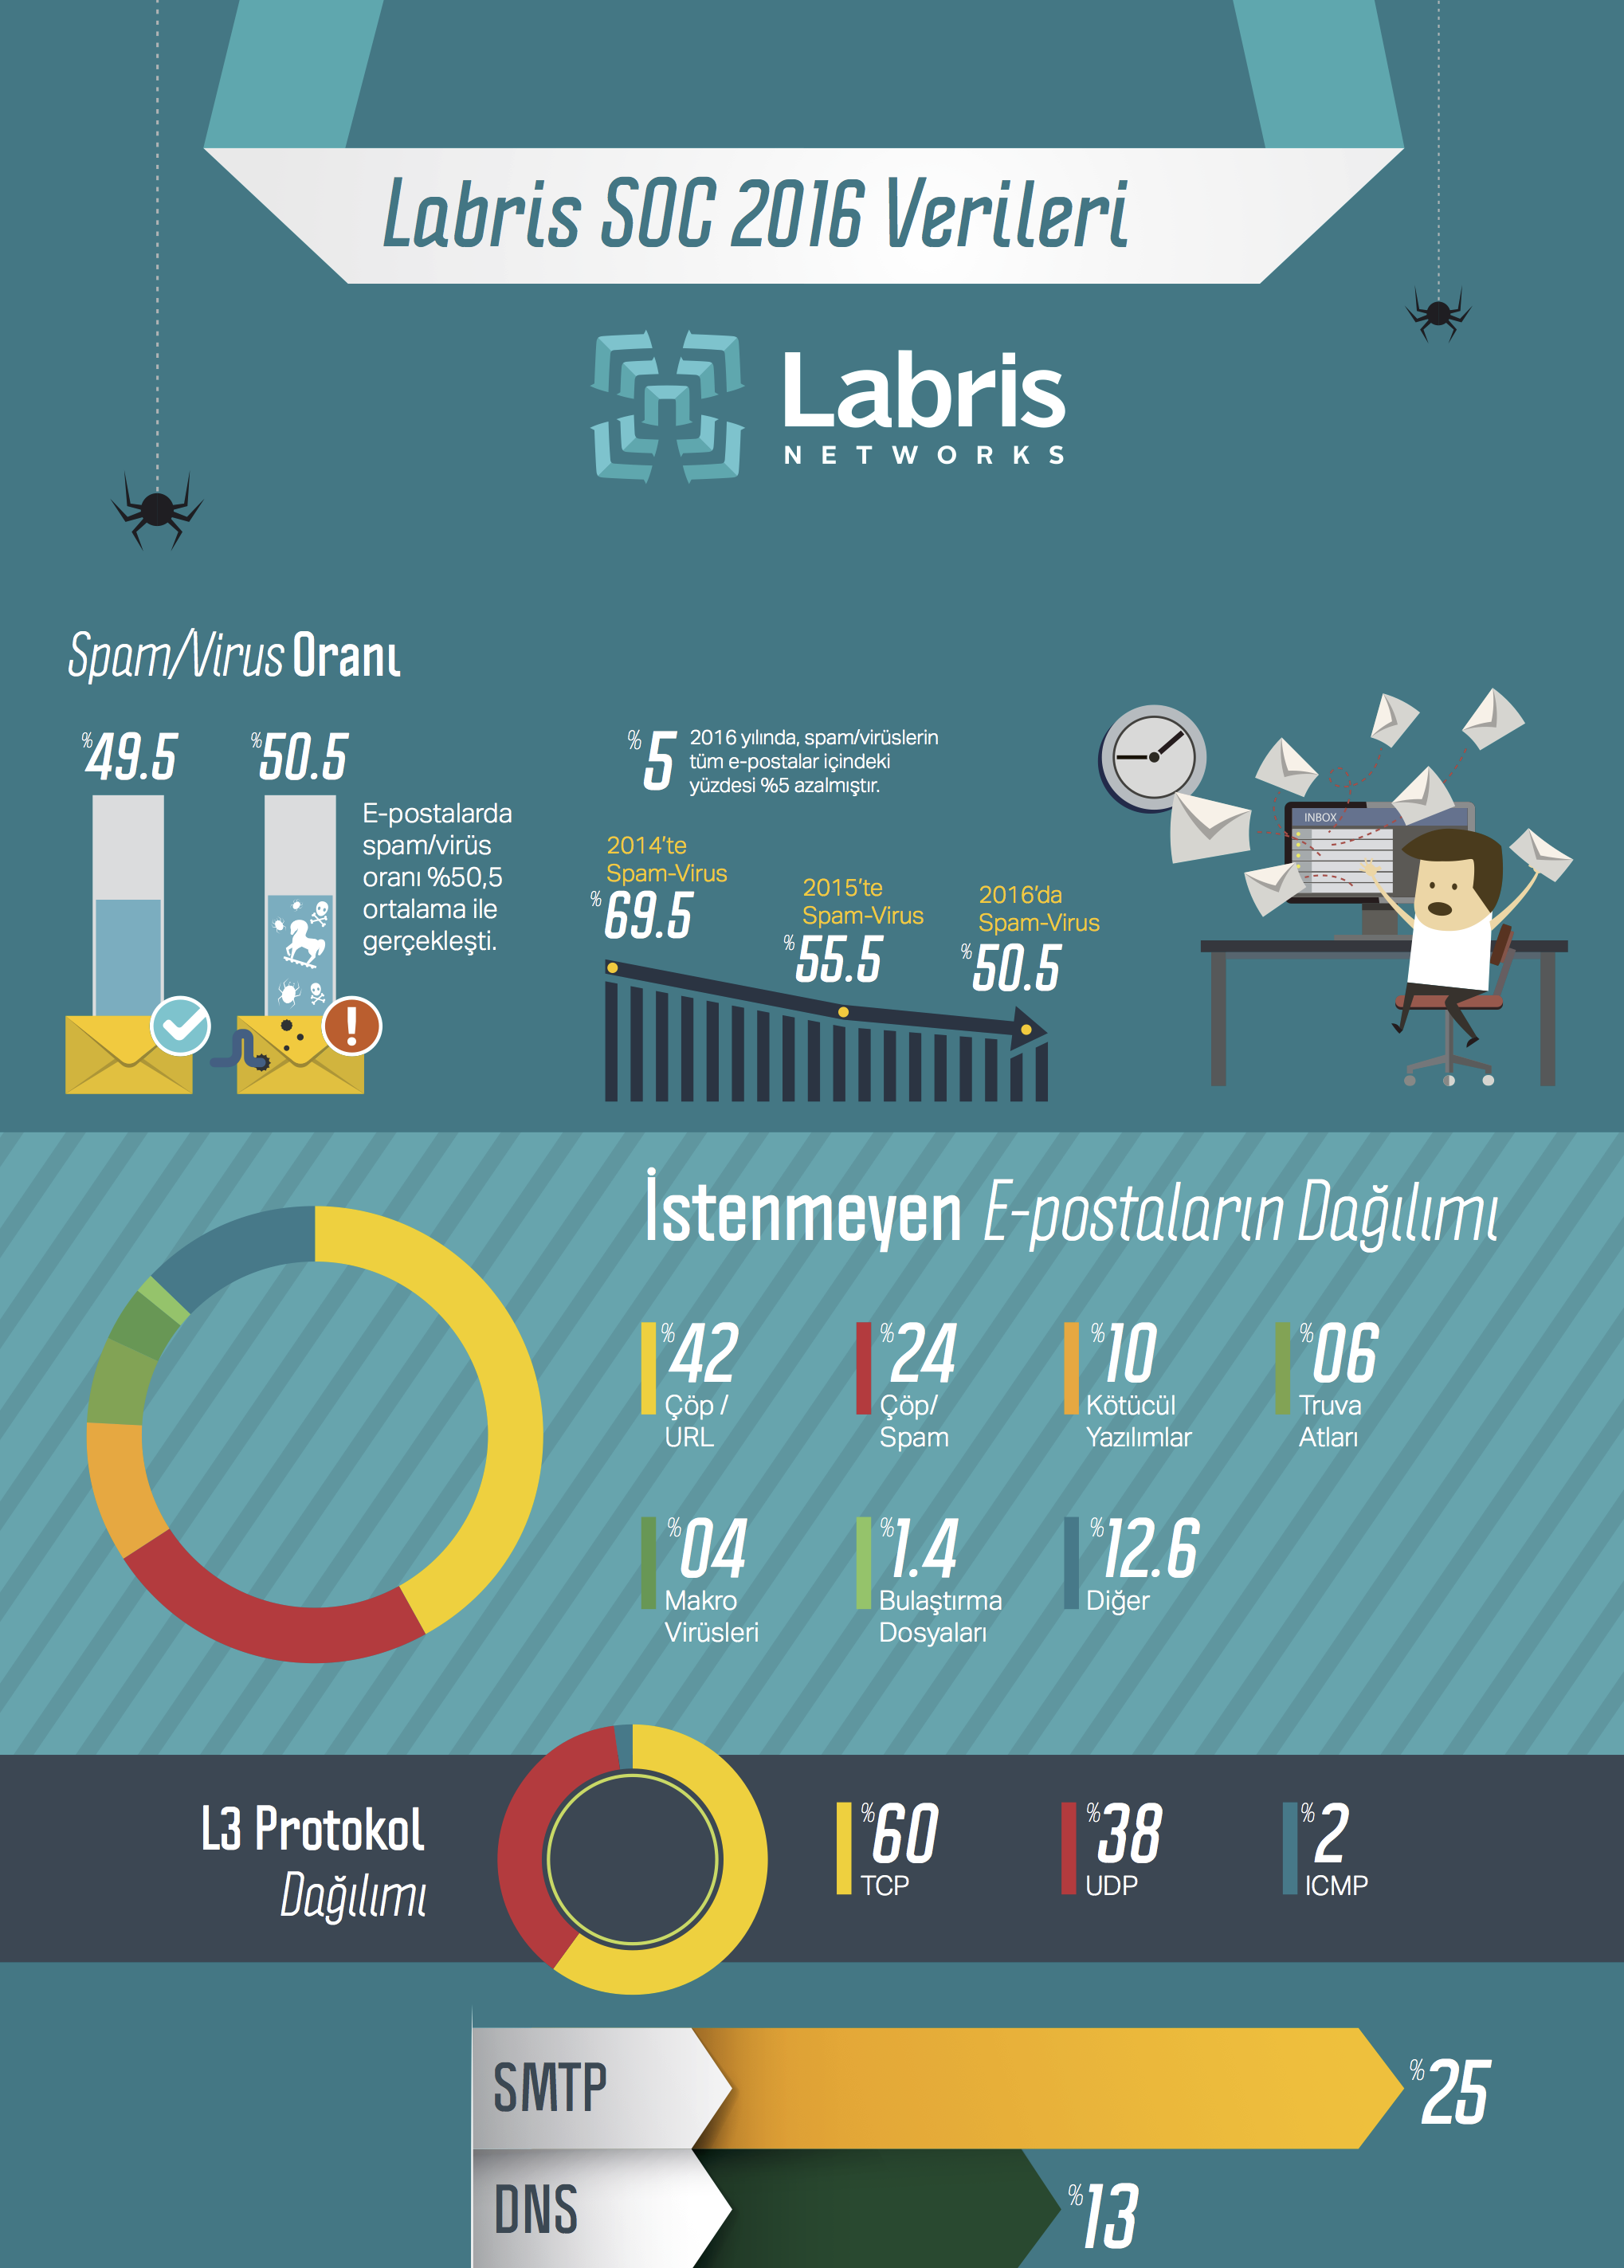 Labris SOC 2016 Verileri İnfografiği için tıklayın.